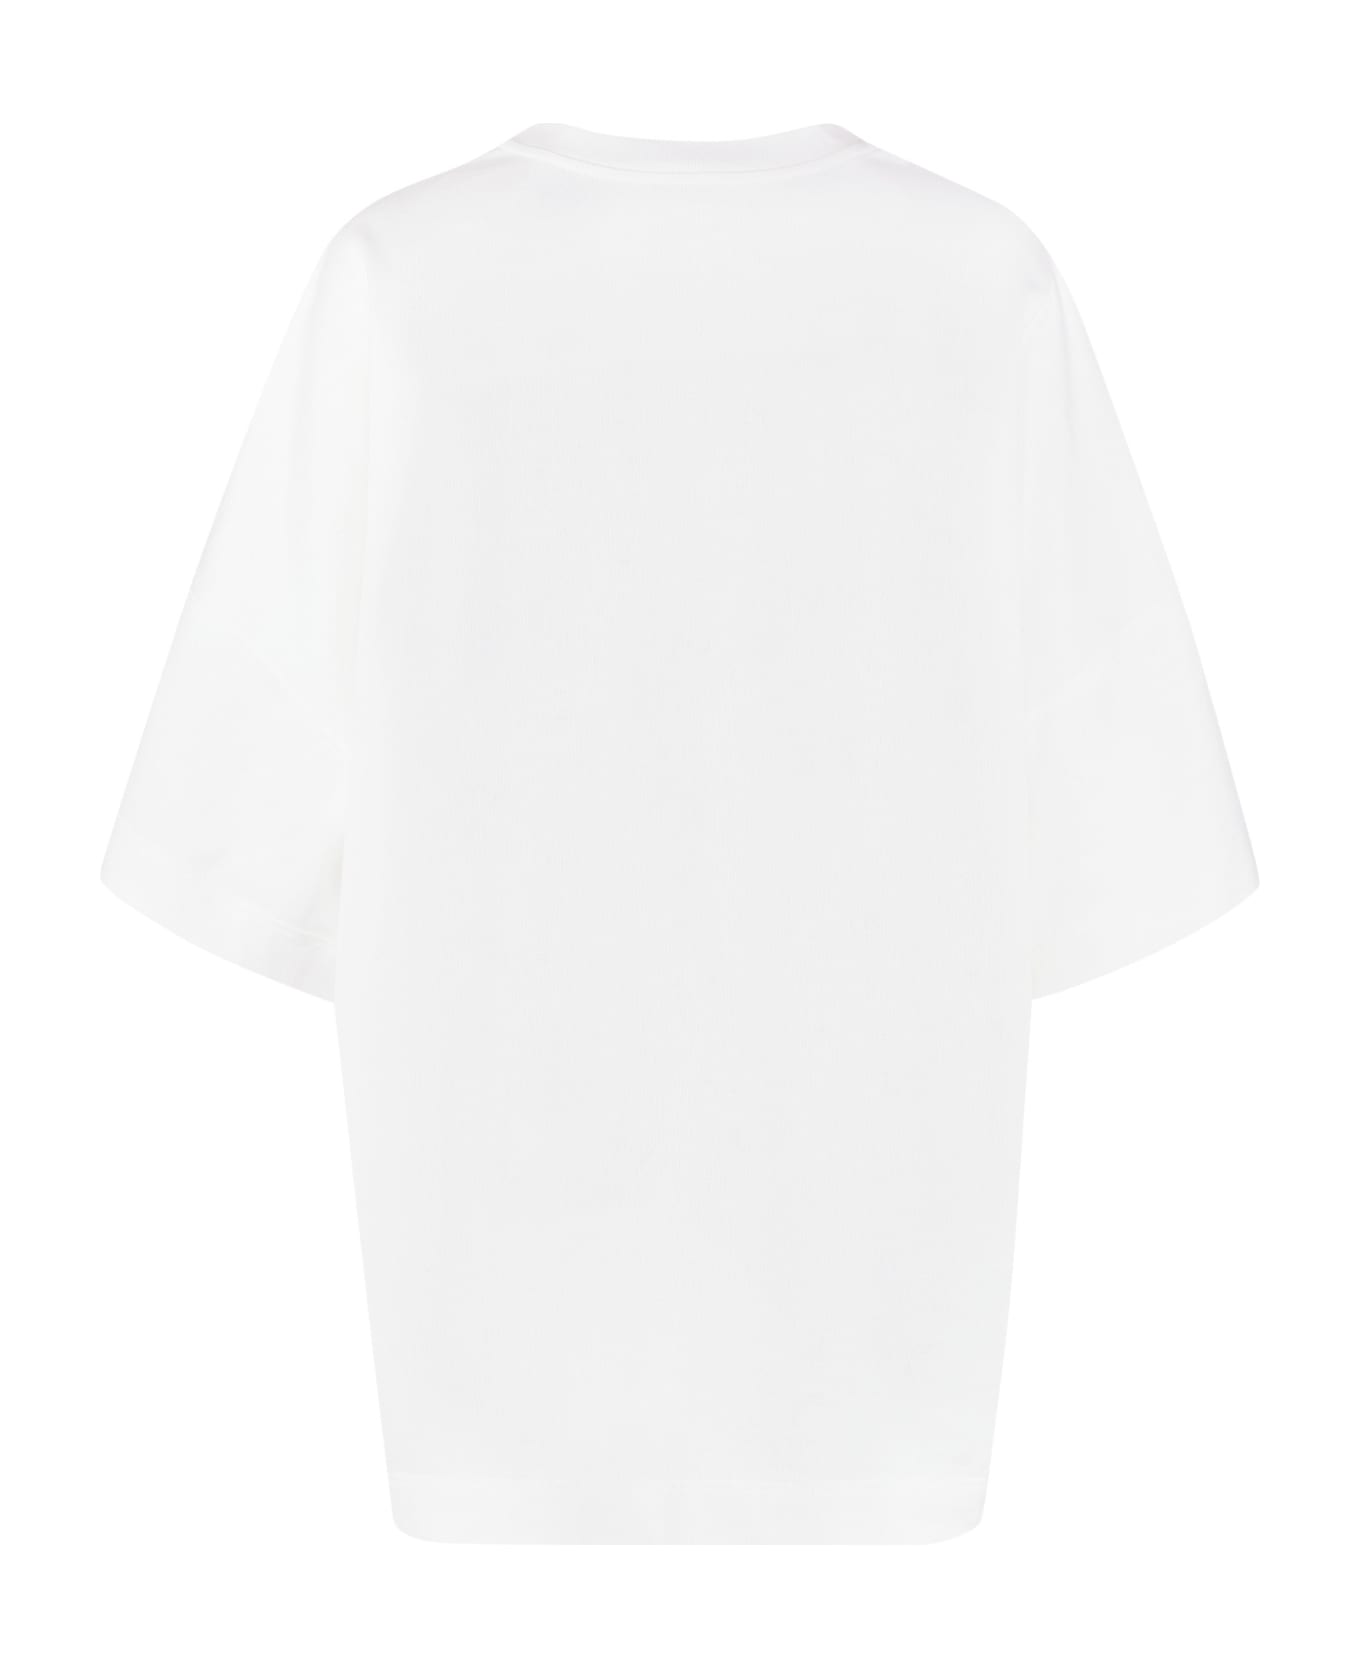 Alexander McQueen Cotton Crew-neck T-shirt - White/Black